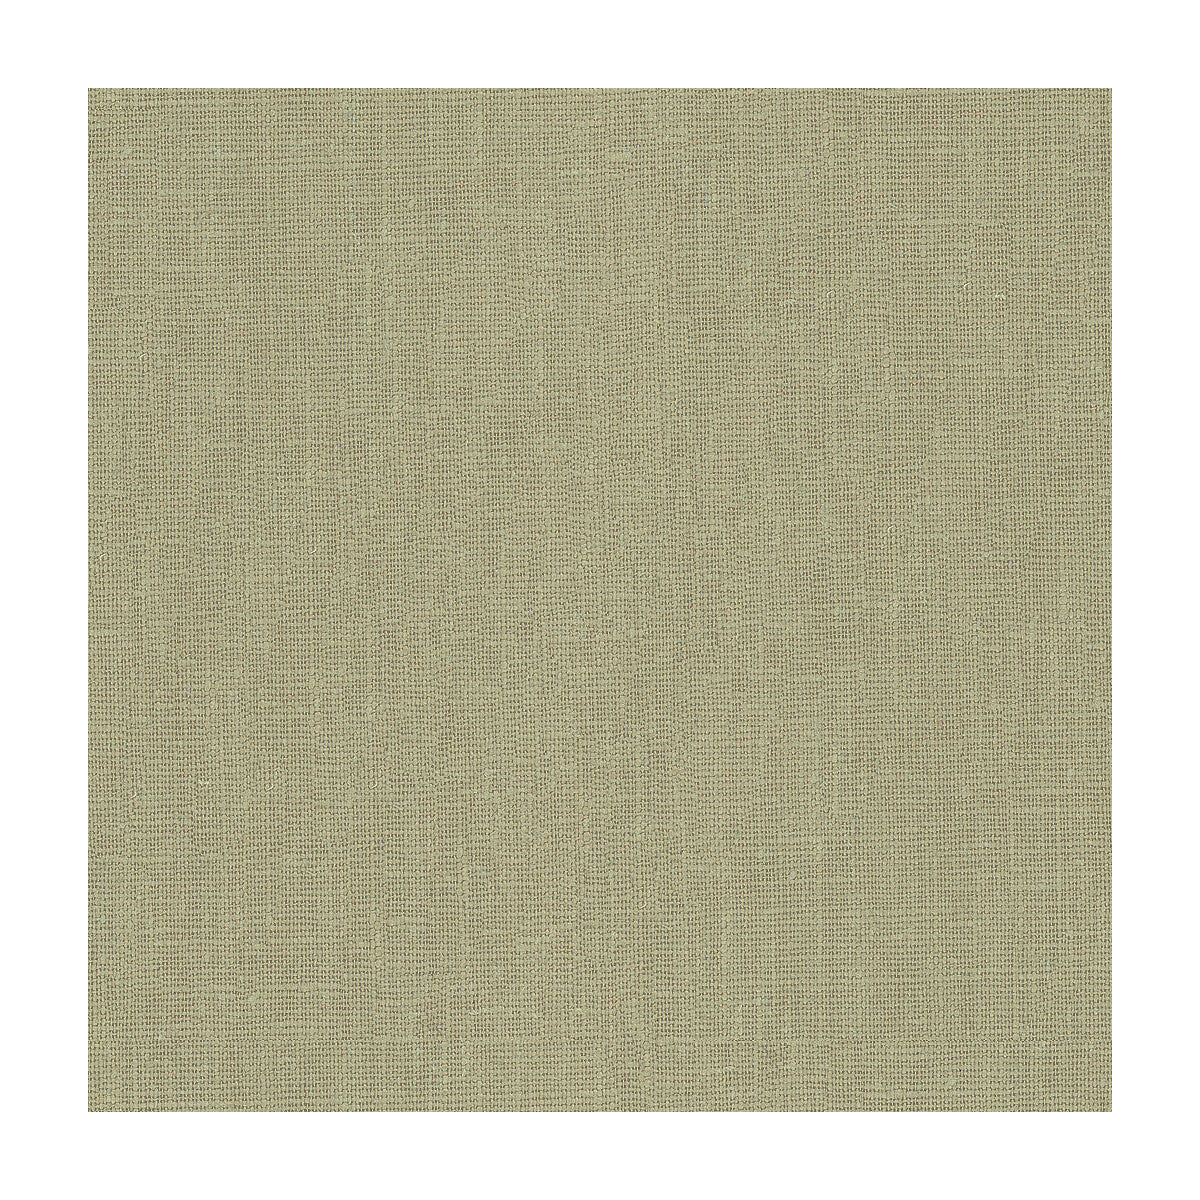 Kravet Basics fabric in 32344-1121 color - pattern 32344.1121.0 - by Kravet Basics